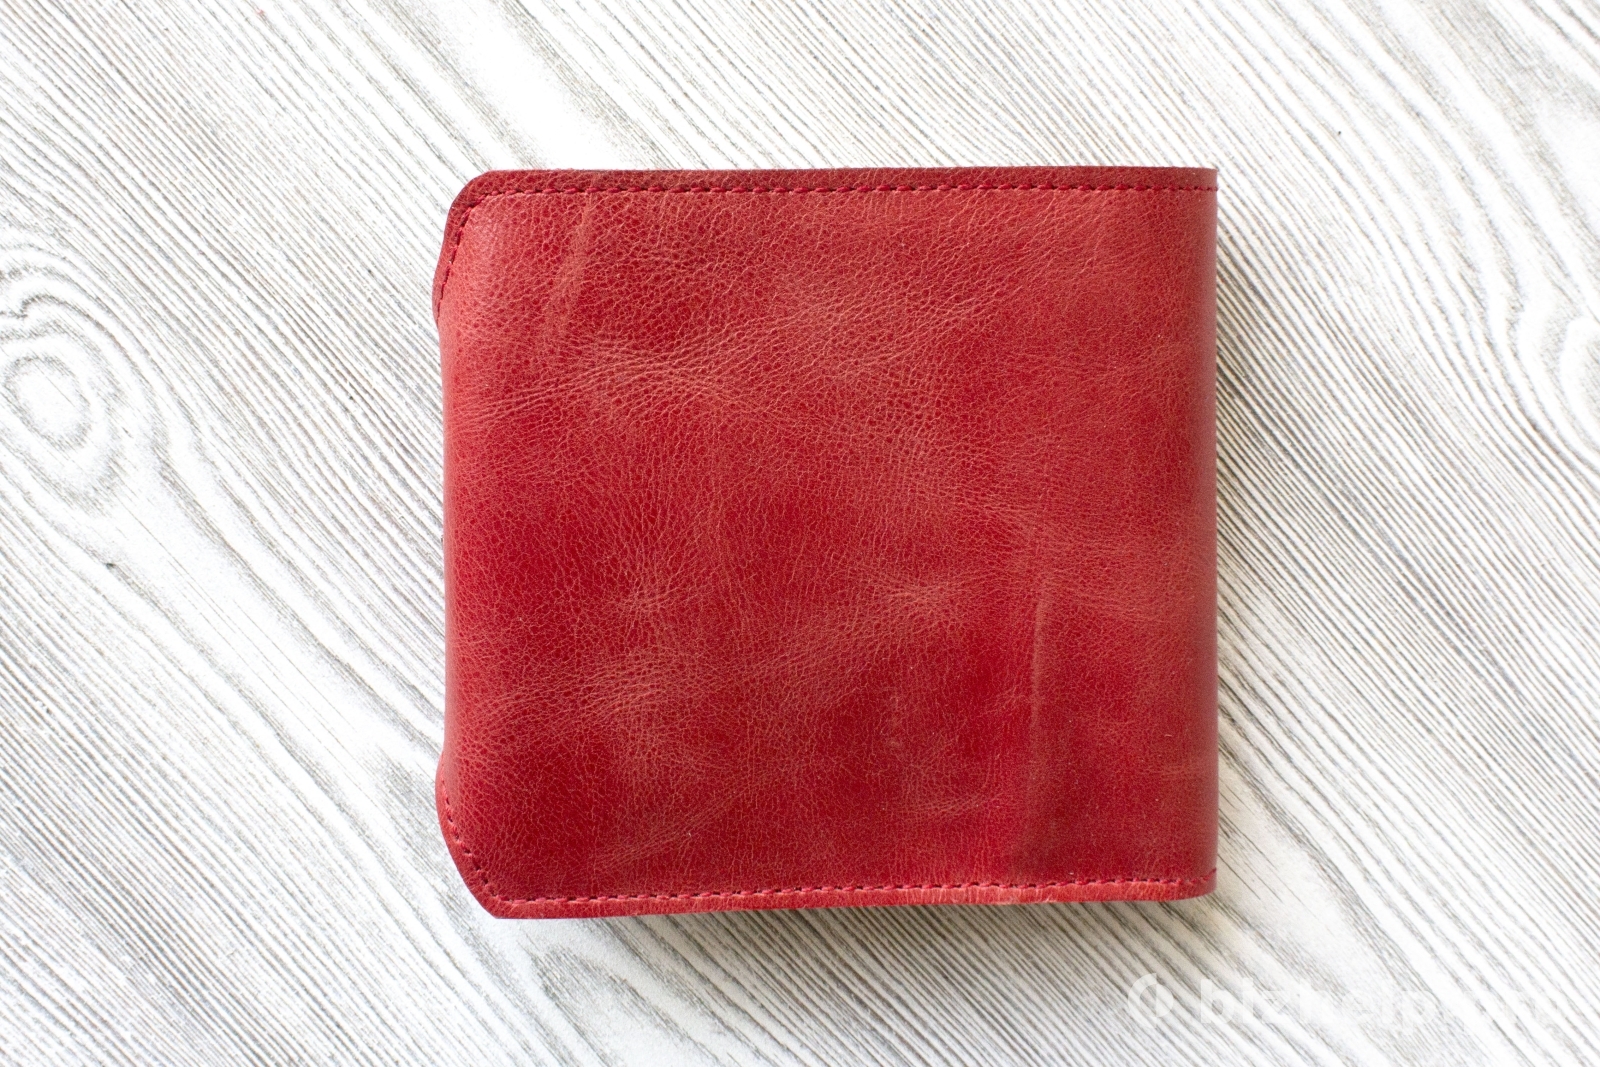 Фотография 3: Красное женское портмоне из натуральной кожи  "Коралл"